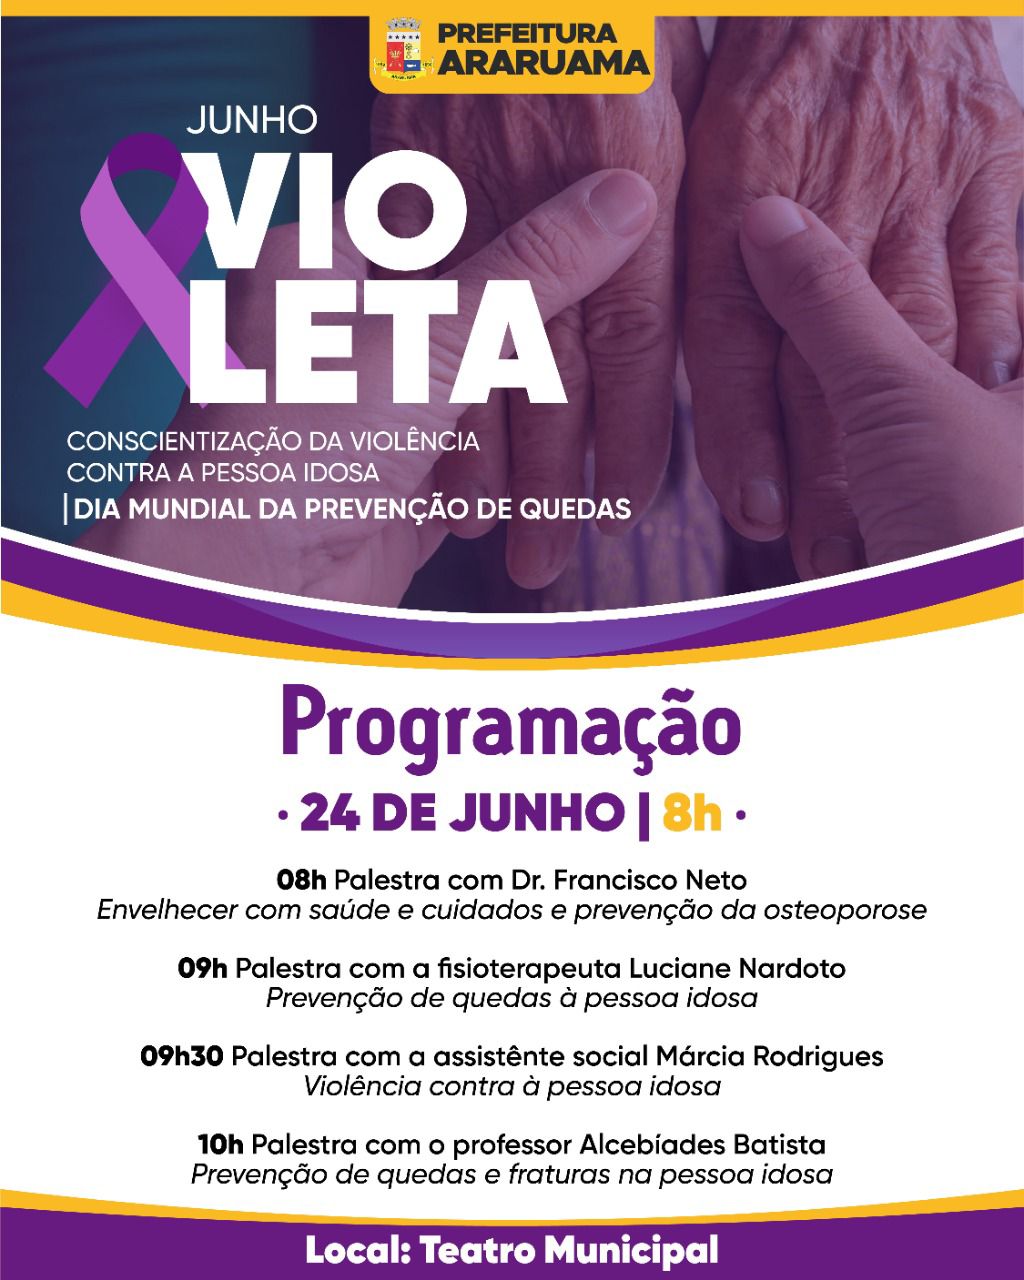 Prefeitura vai realizar o evento “Junho Violeta” que trata da conscientização da violência contra os idosos